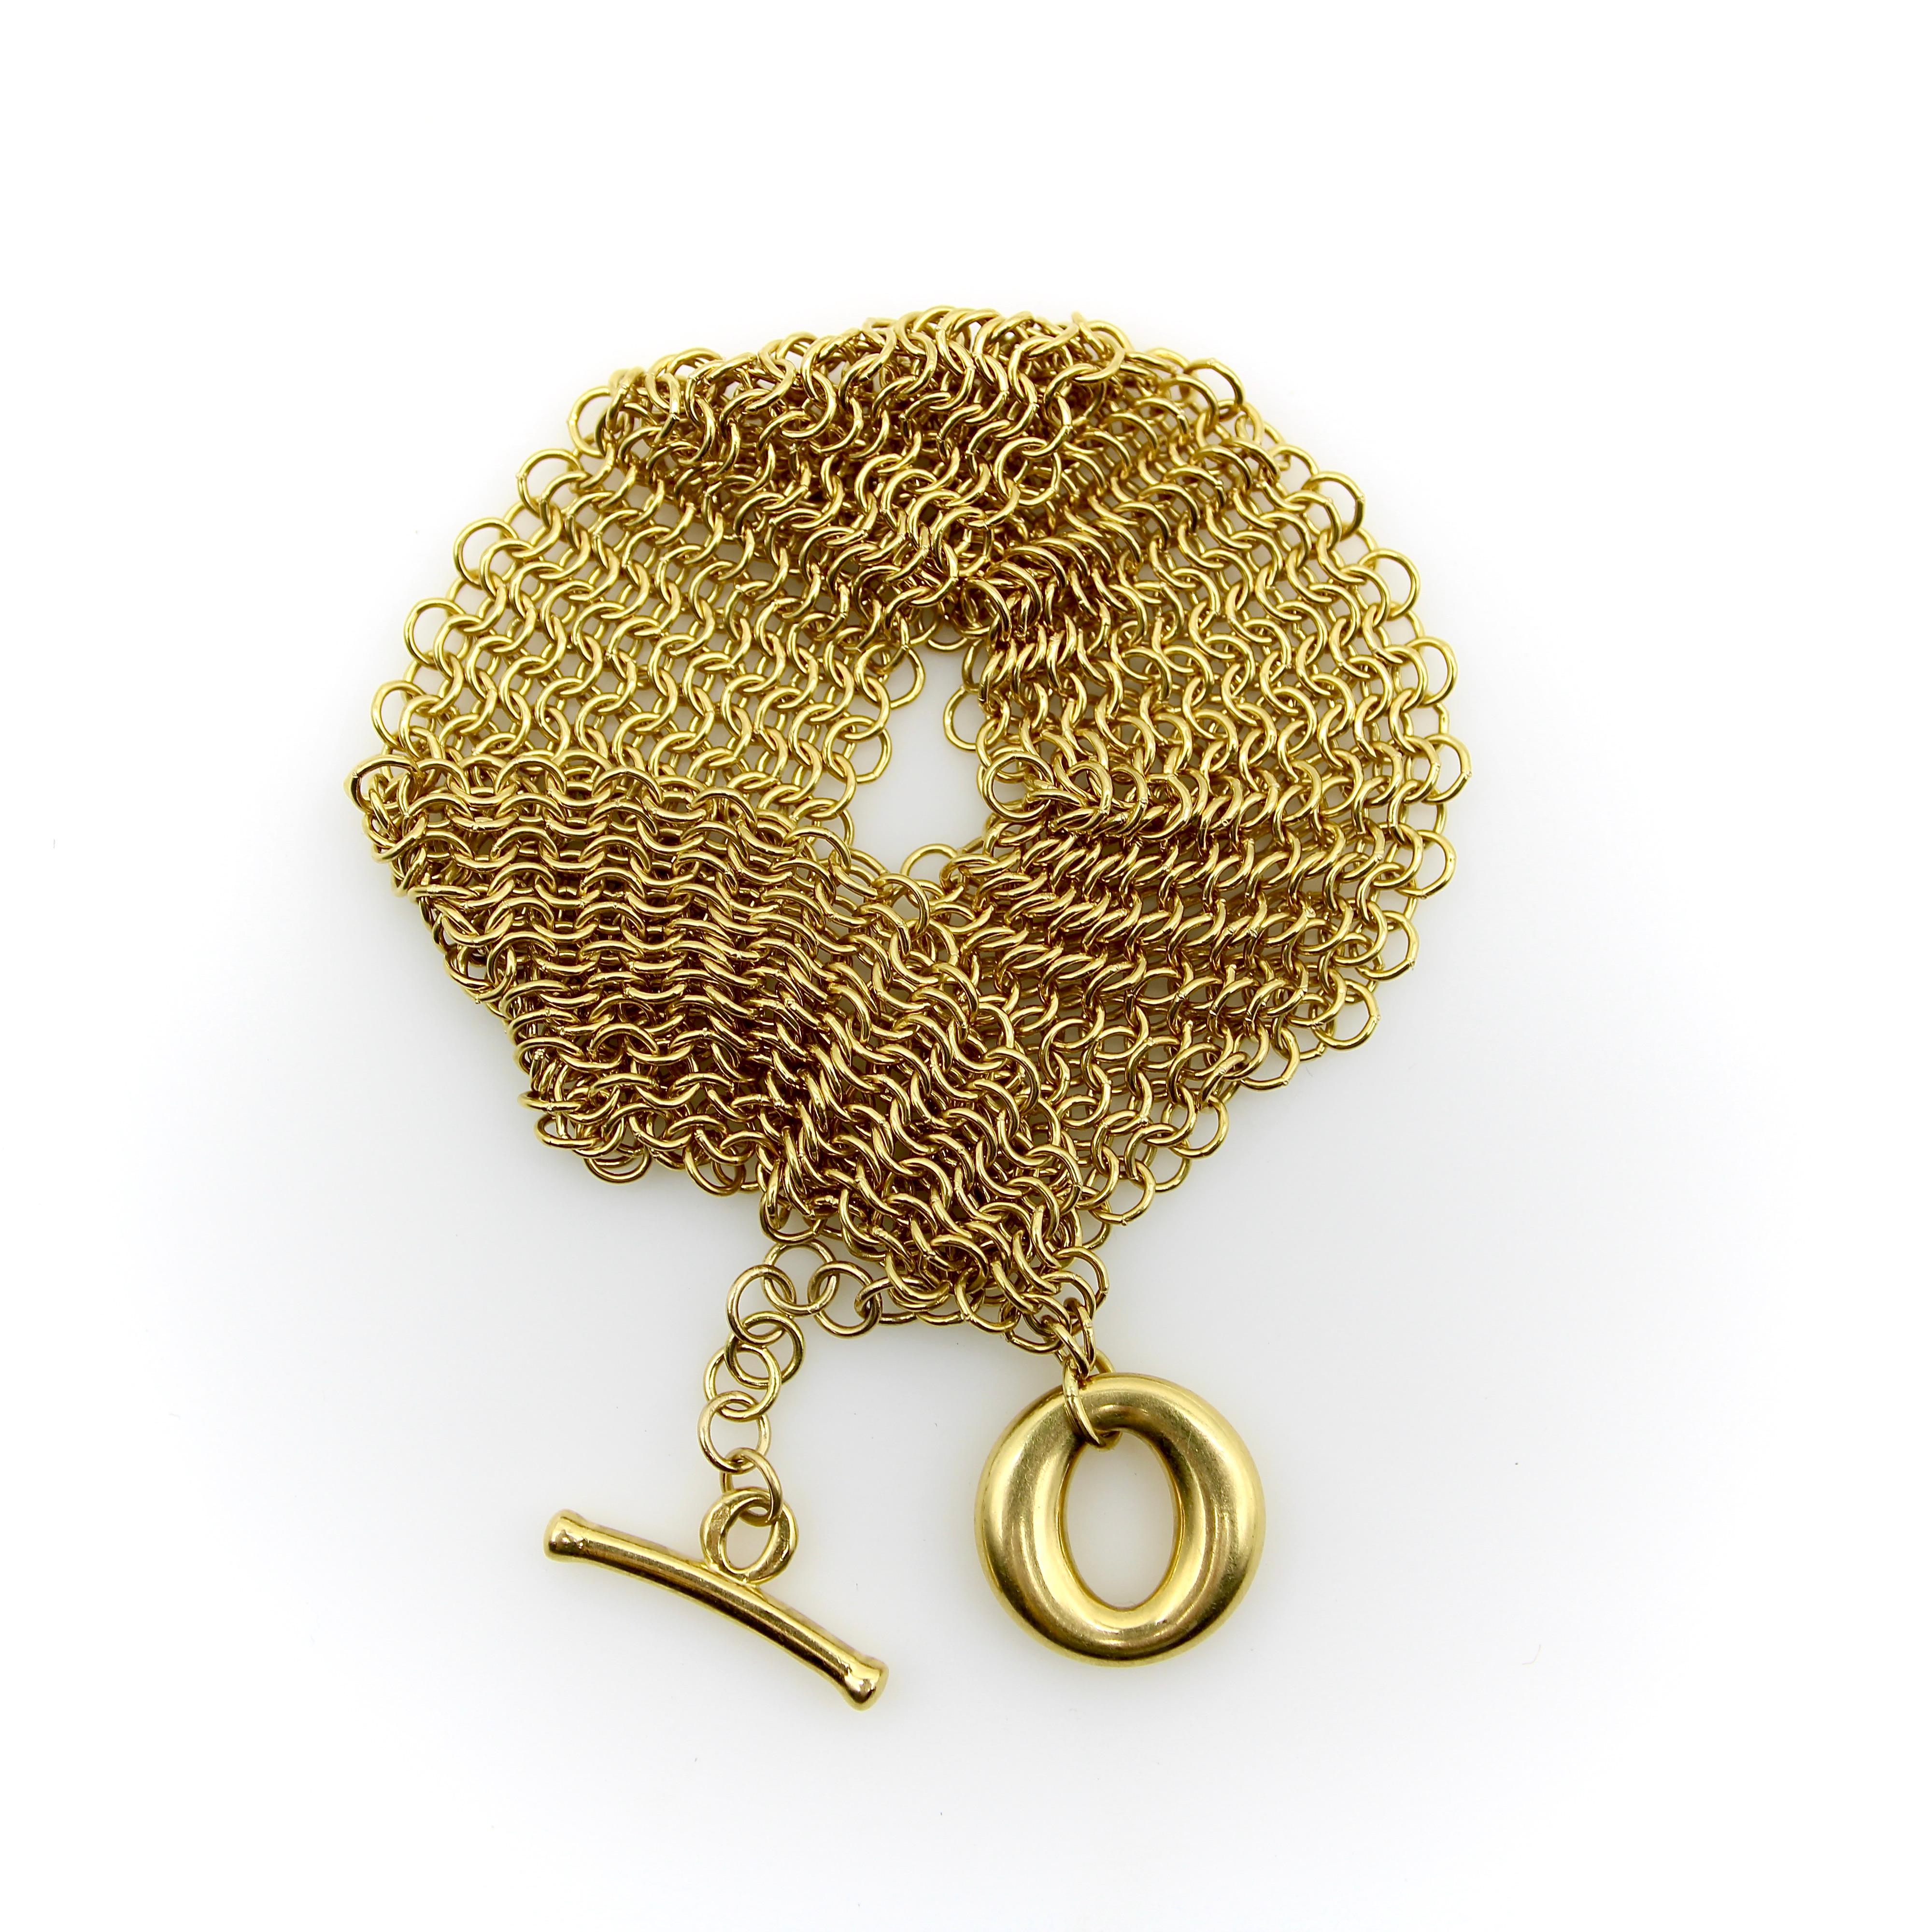 Conçu par Elega Peretti pour Tiffany & Co, ce bracelet Somerset en or 18 carats est une pièce magnifique et fluide qui se drape élégamment autour du poignet. Des couches de maillons circulaires en or sont entrelacées pour créer une maille dorée qui